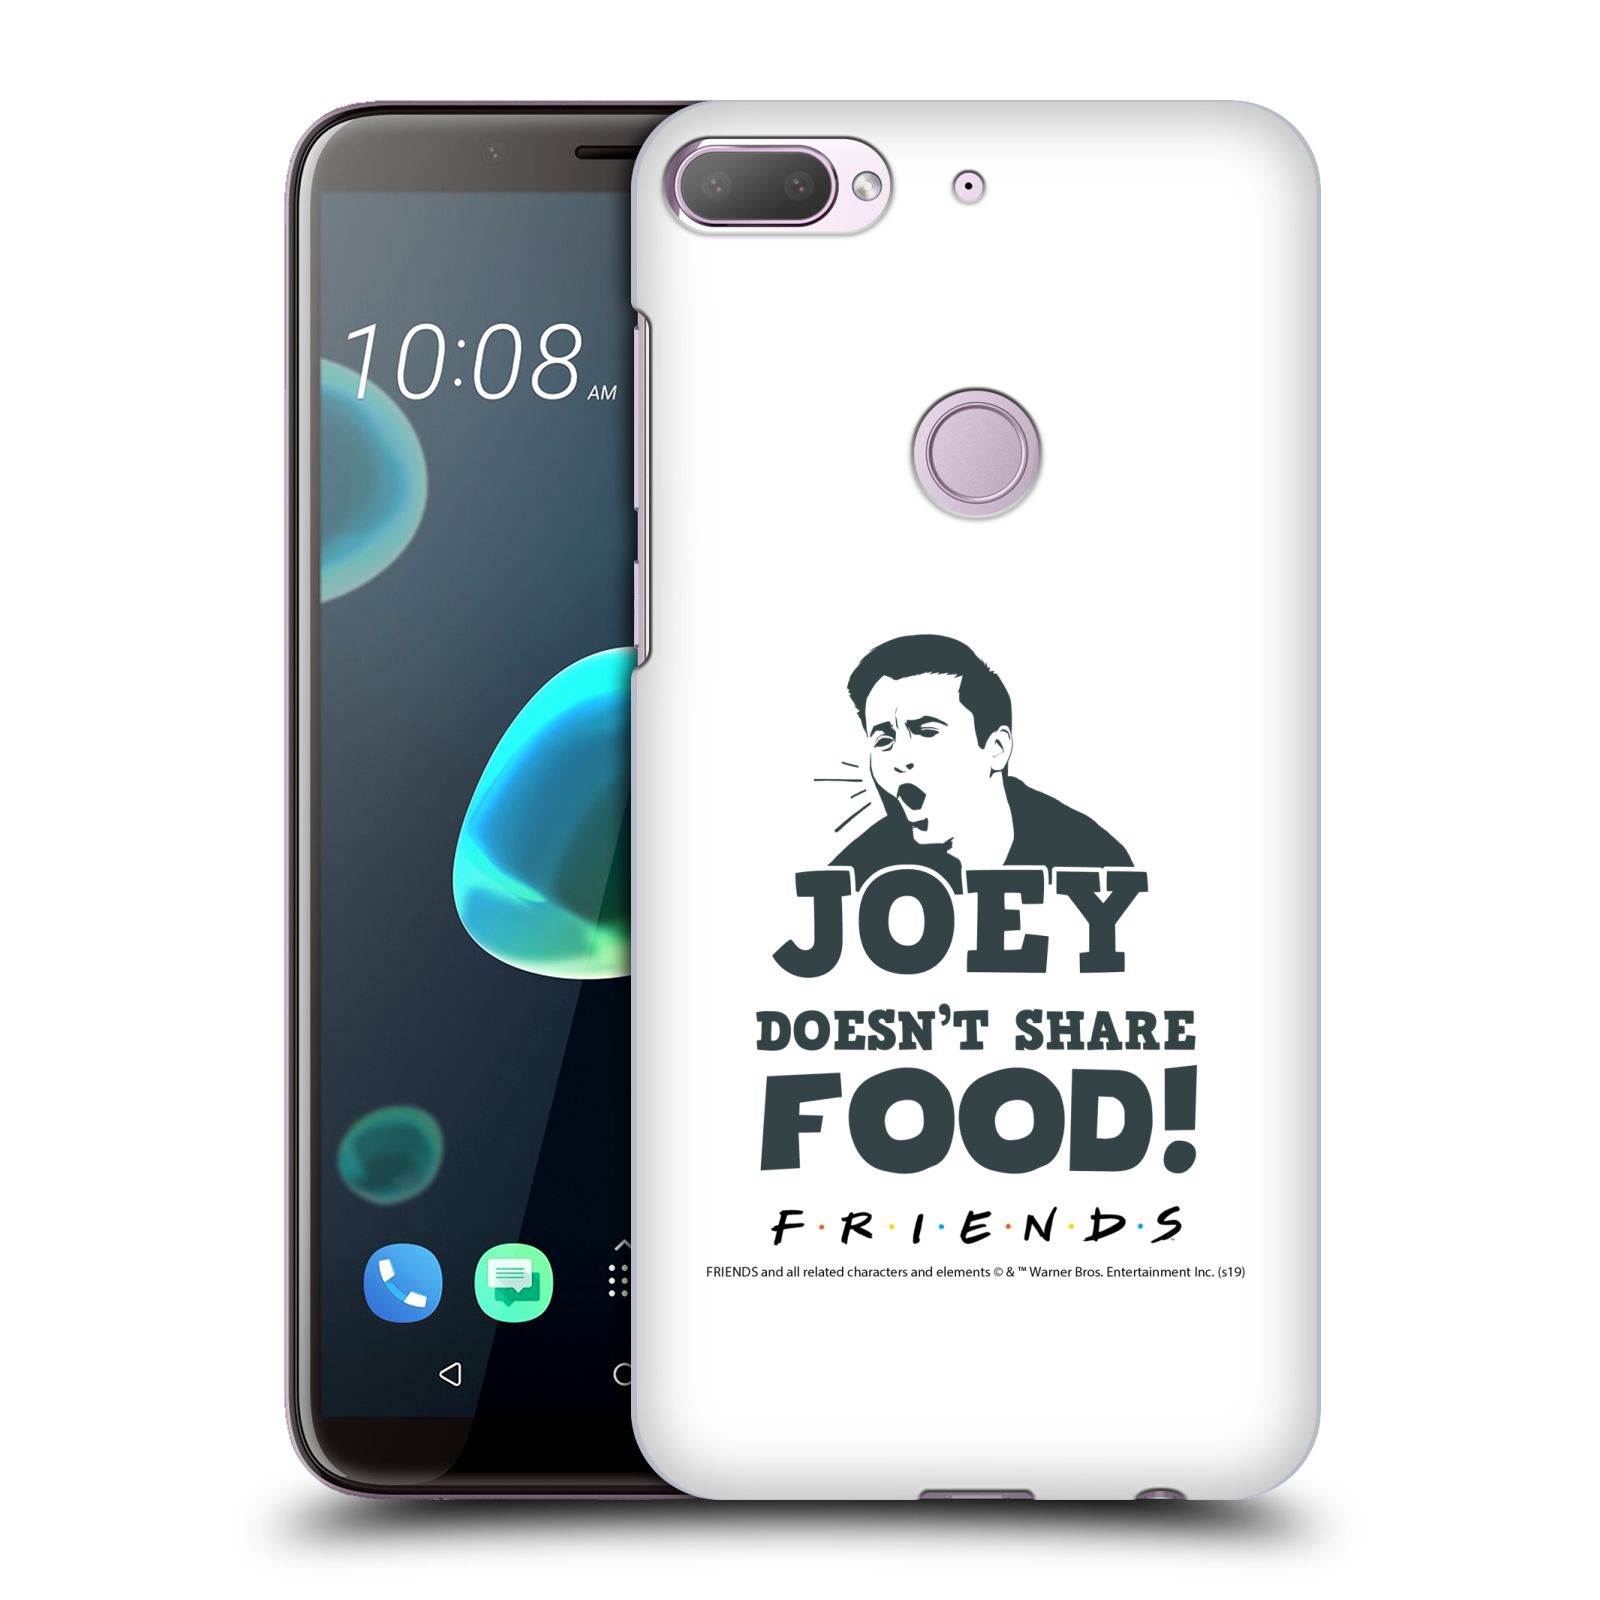 Pouzdro na mobil HTC Desire 12+ / Desire 12+ DUAL SIM - HEAD CASE - Seriál Přátelé - Joey se o jídlo nedělí